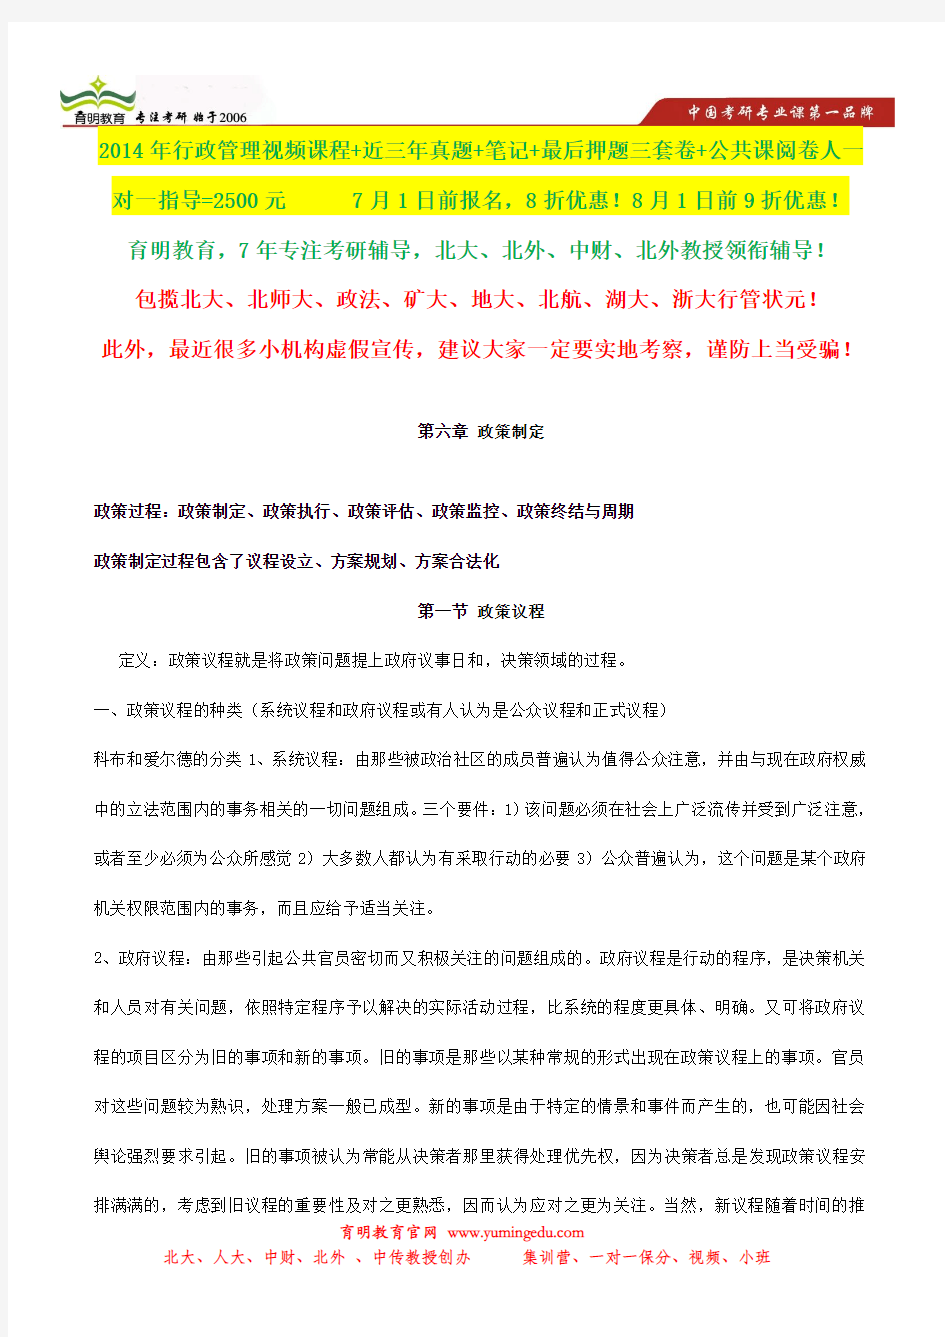 中国政法大学行政管理考研状元笔记,考研真题,题库